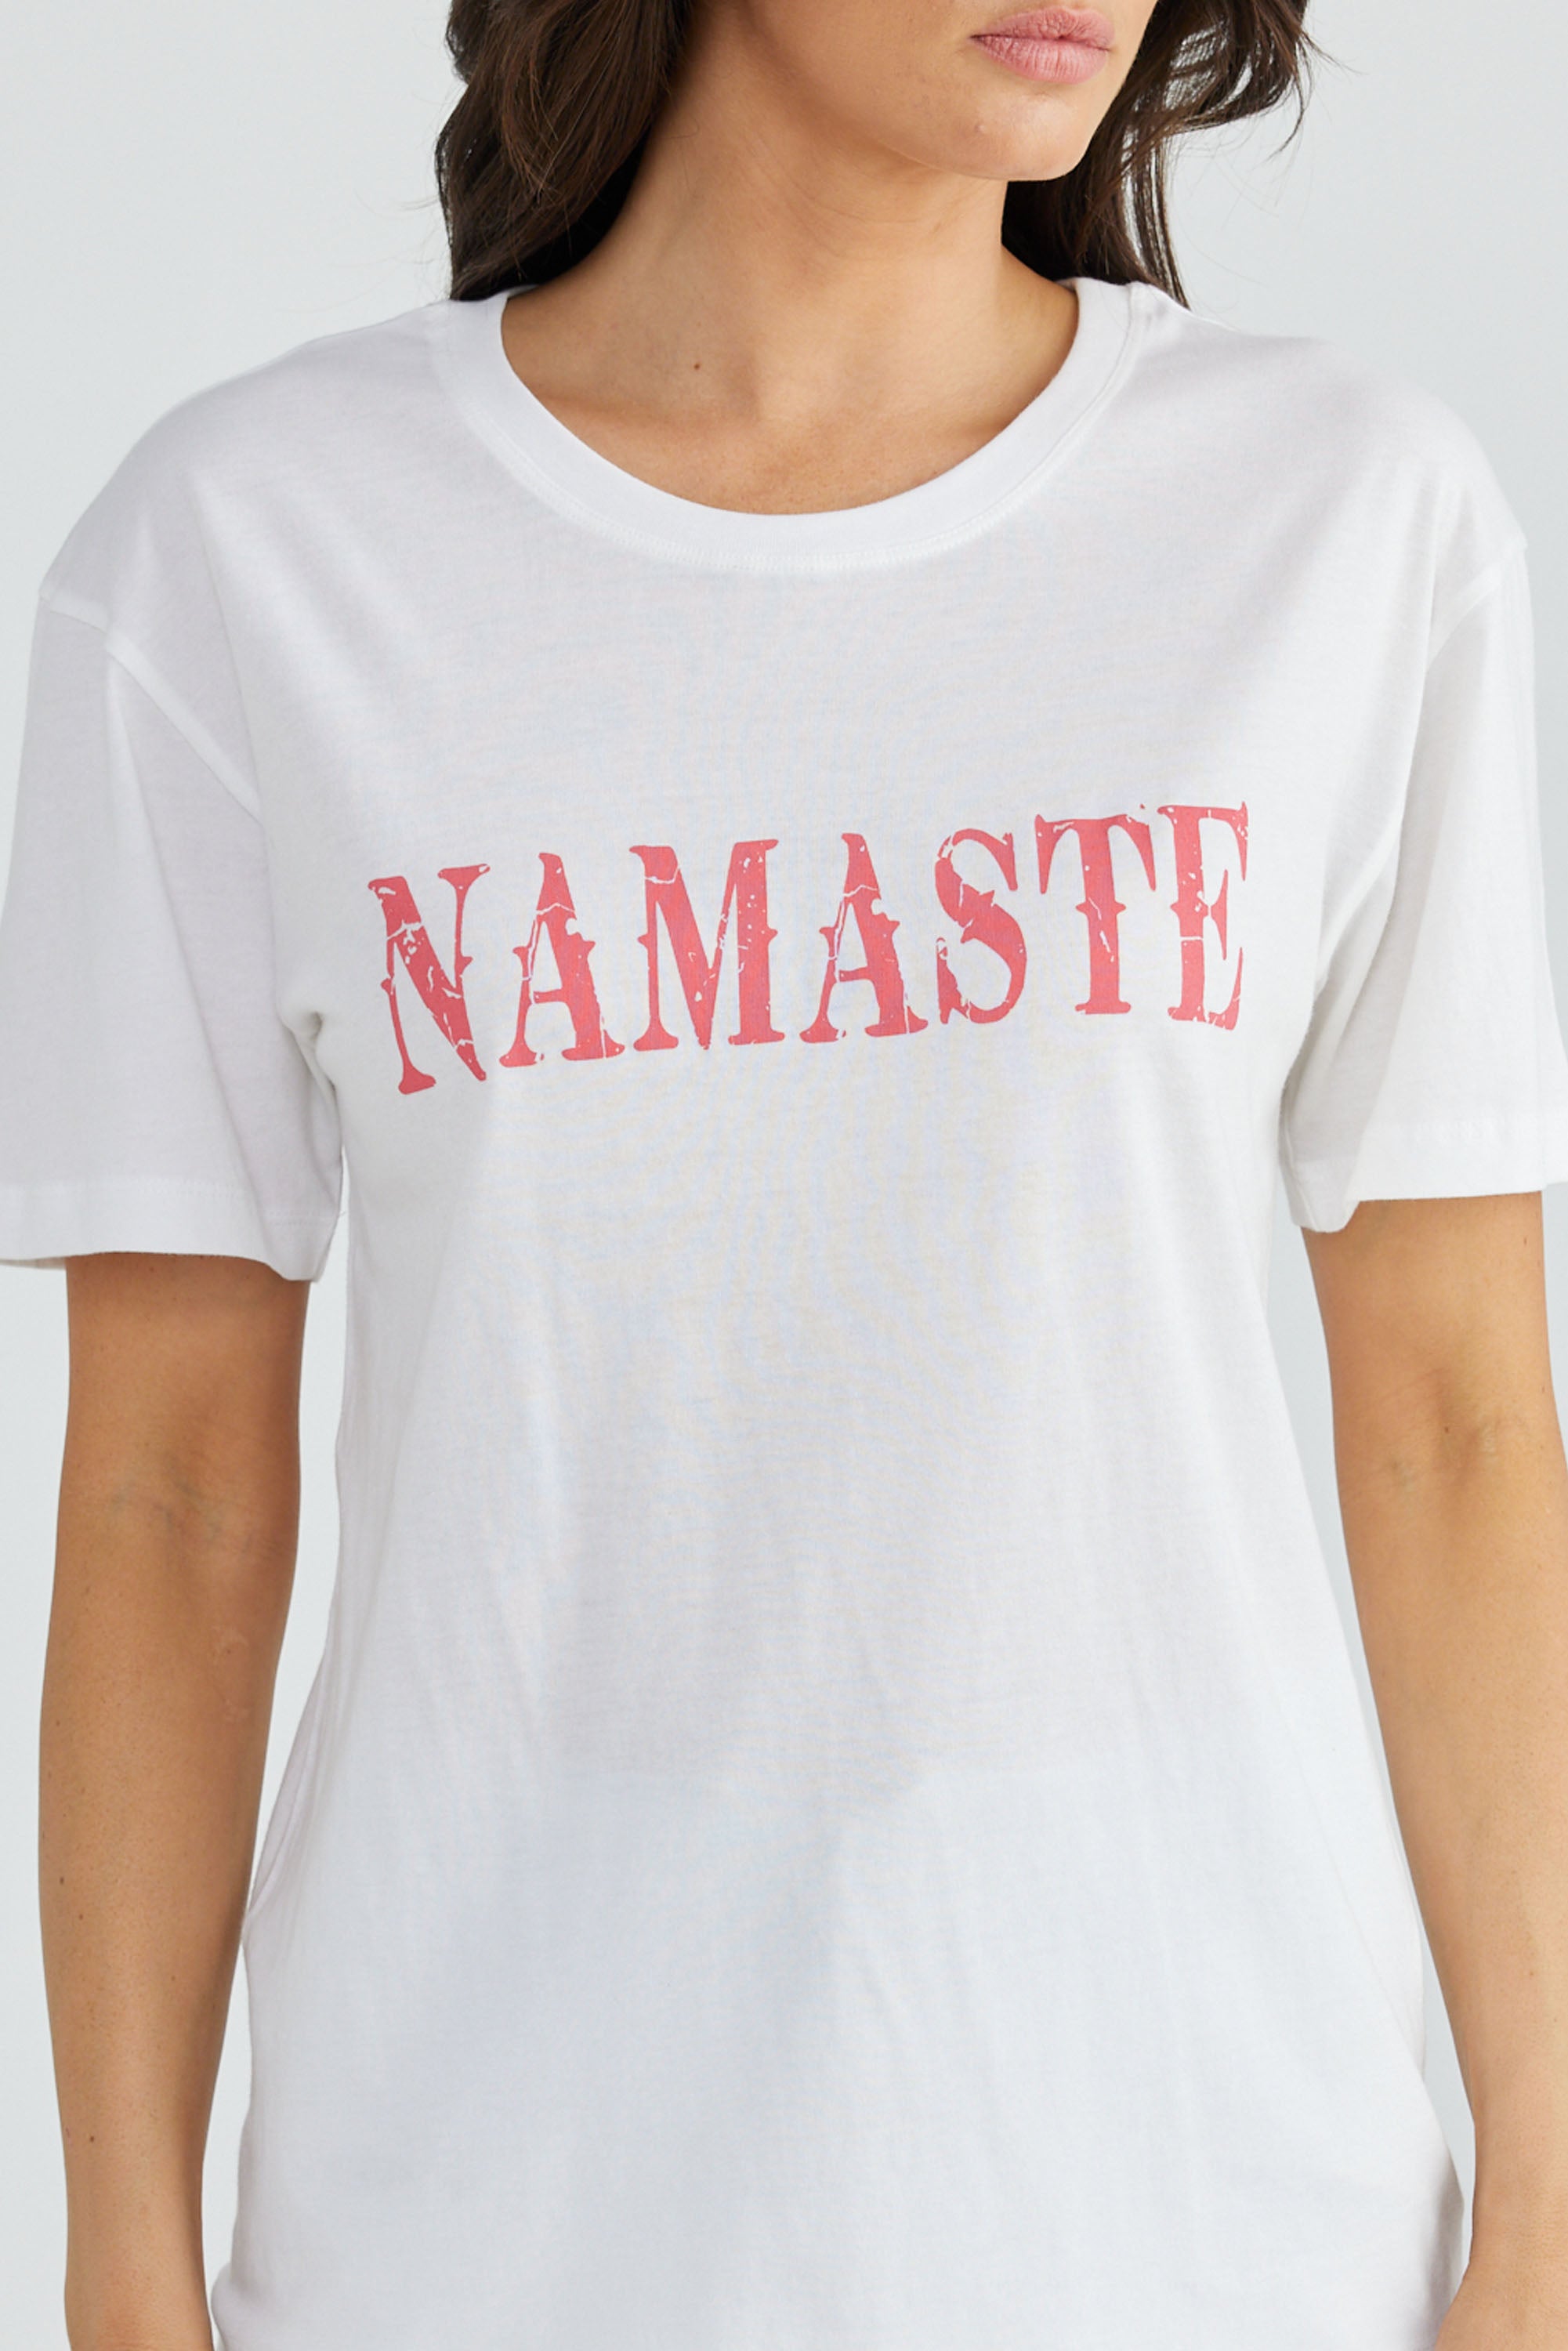 Namaste Tee - White